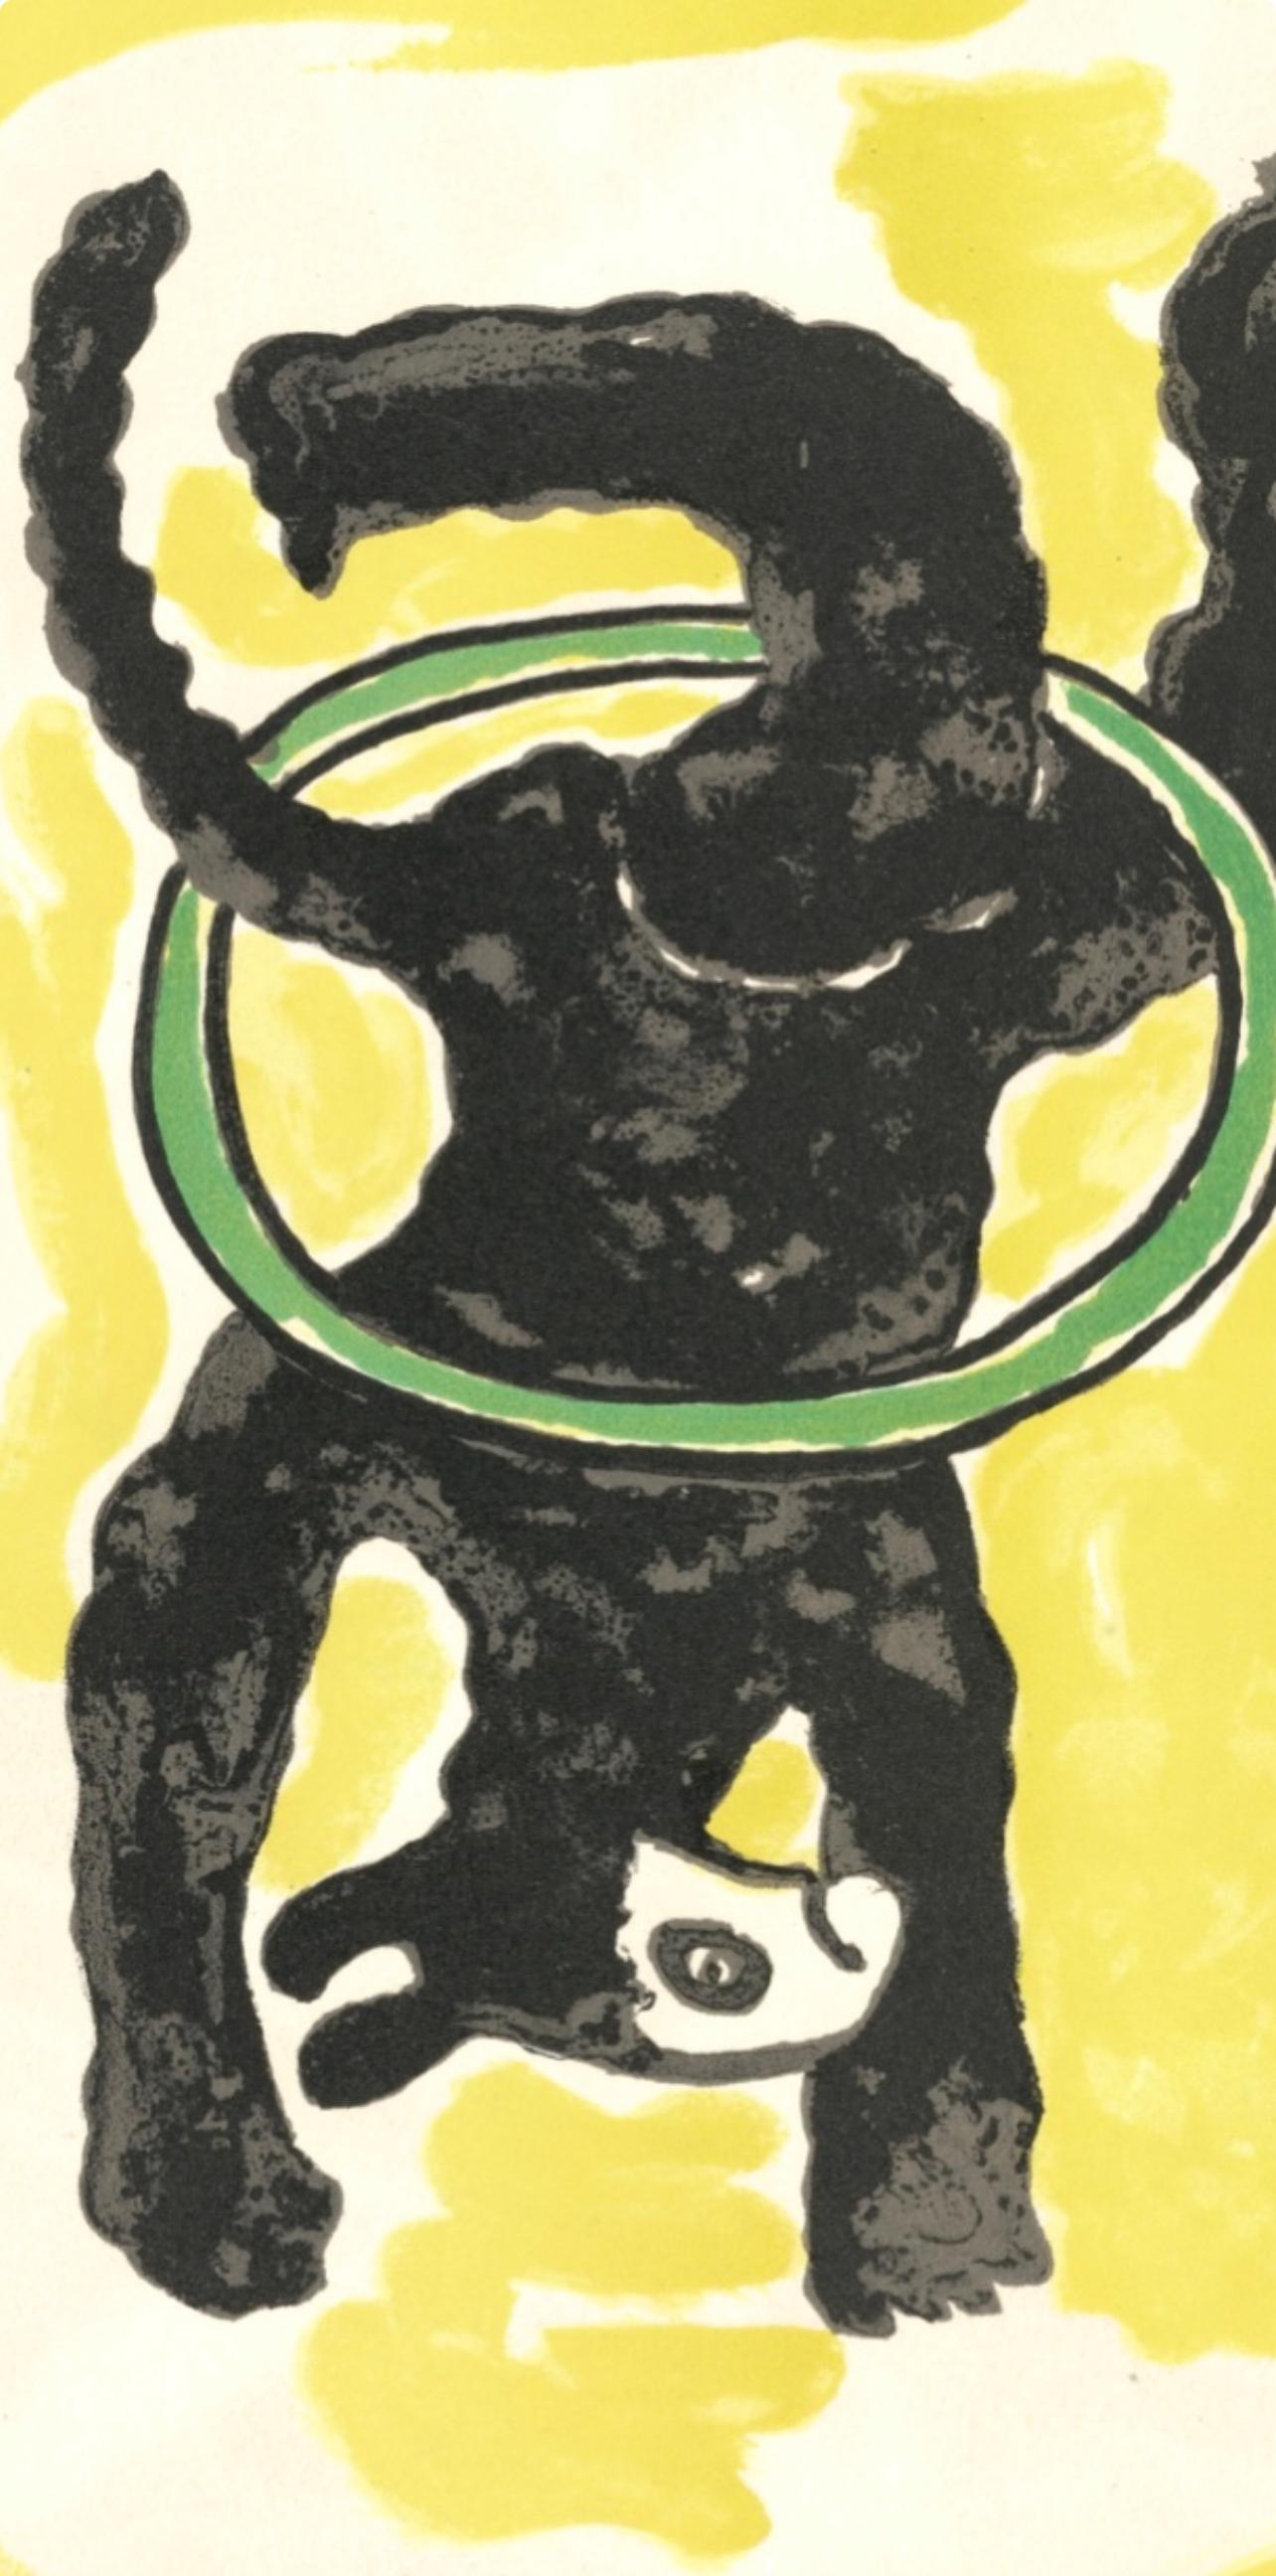 Composition, Cirque (Saphire 44-106), Fernand Leger - Print by Fernand Léger